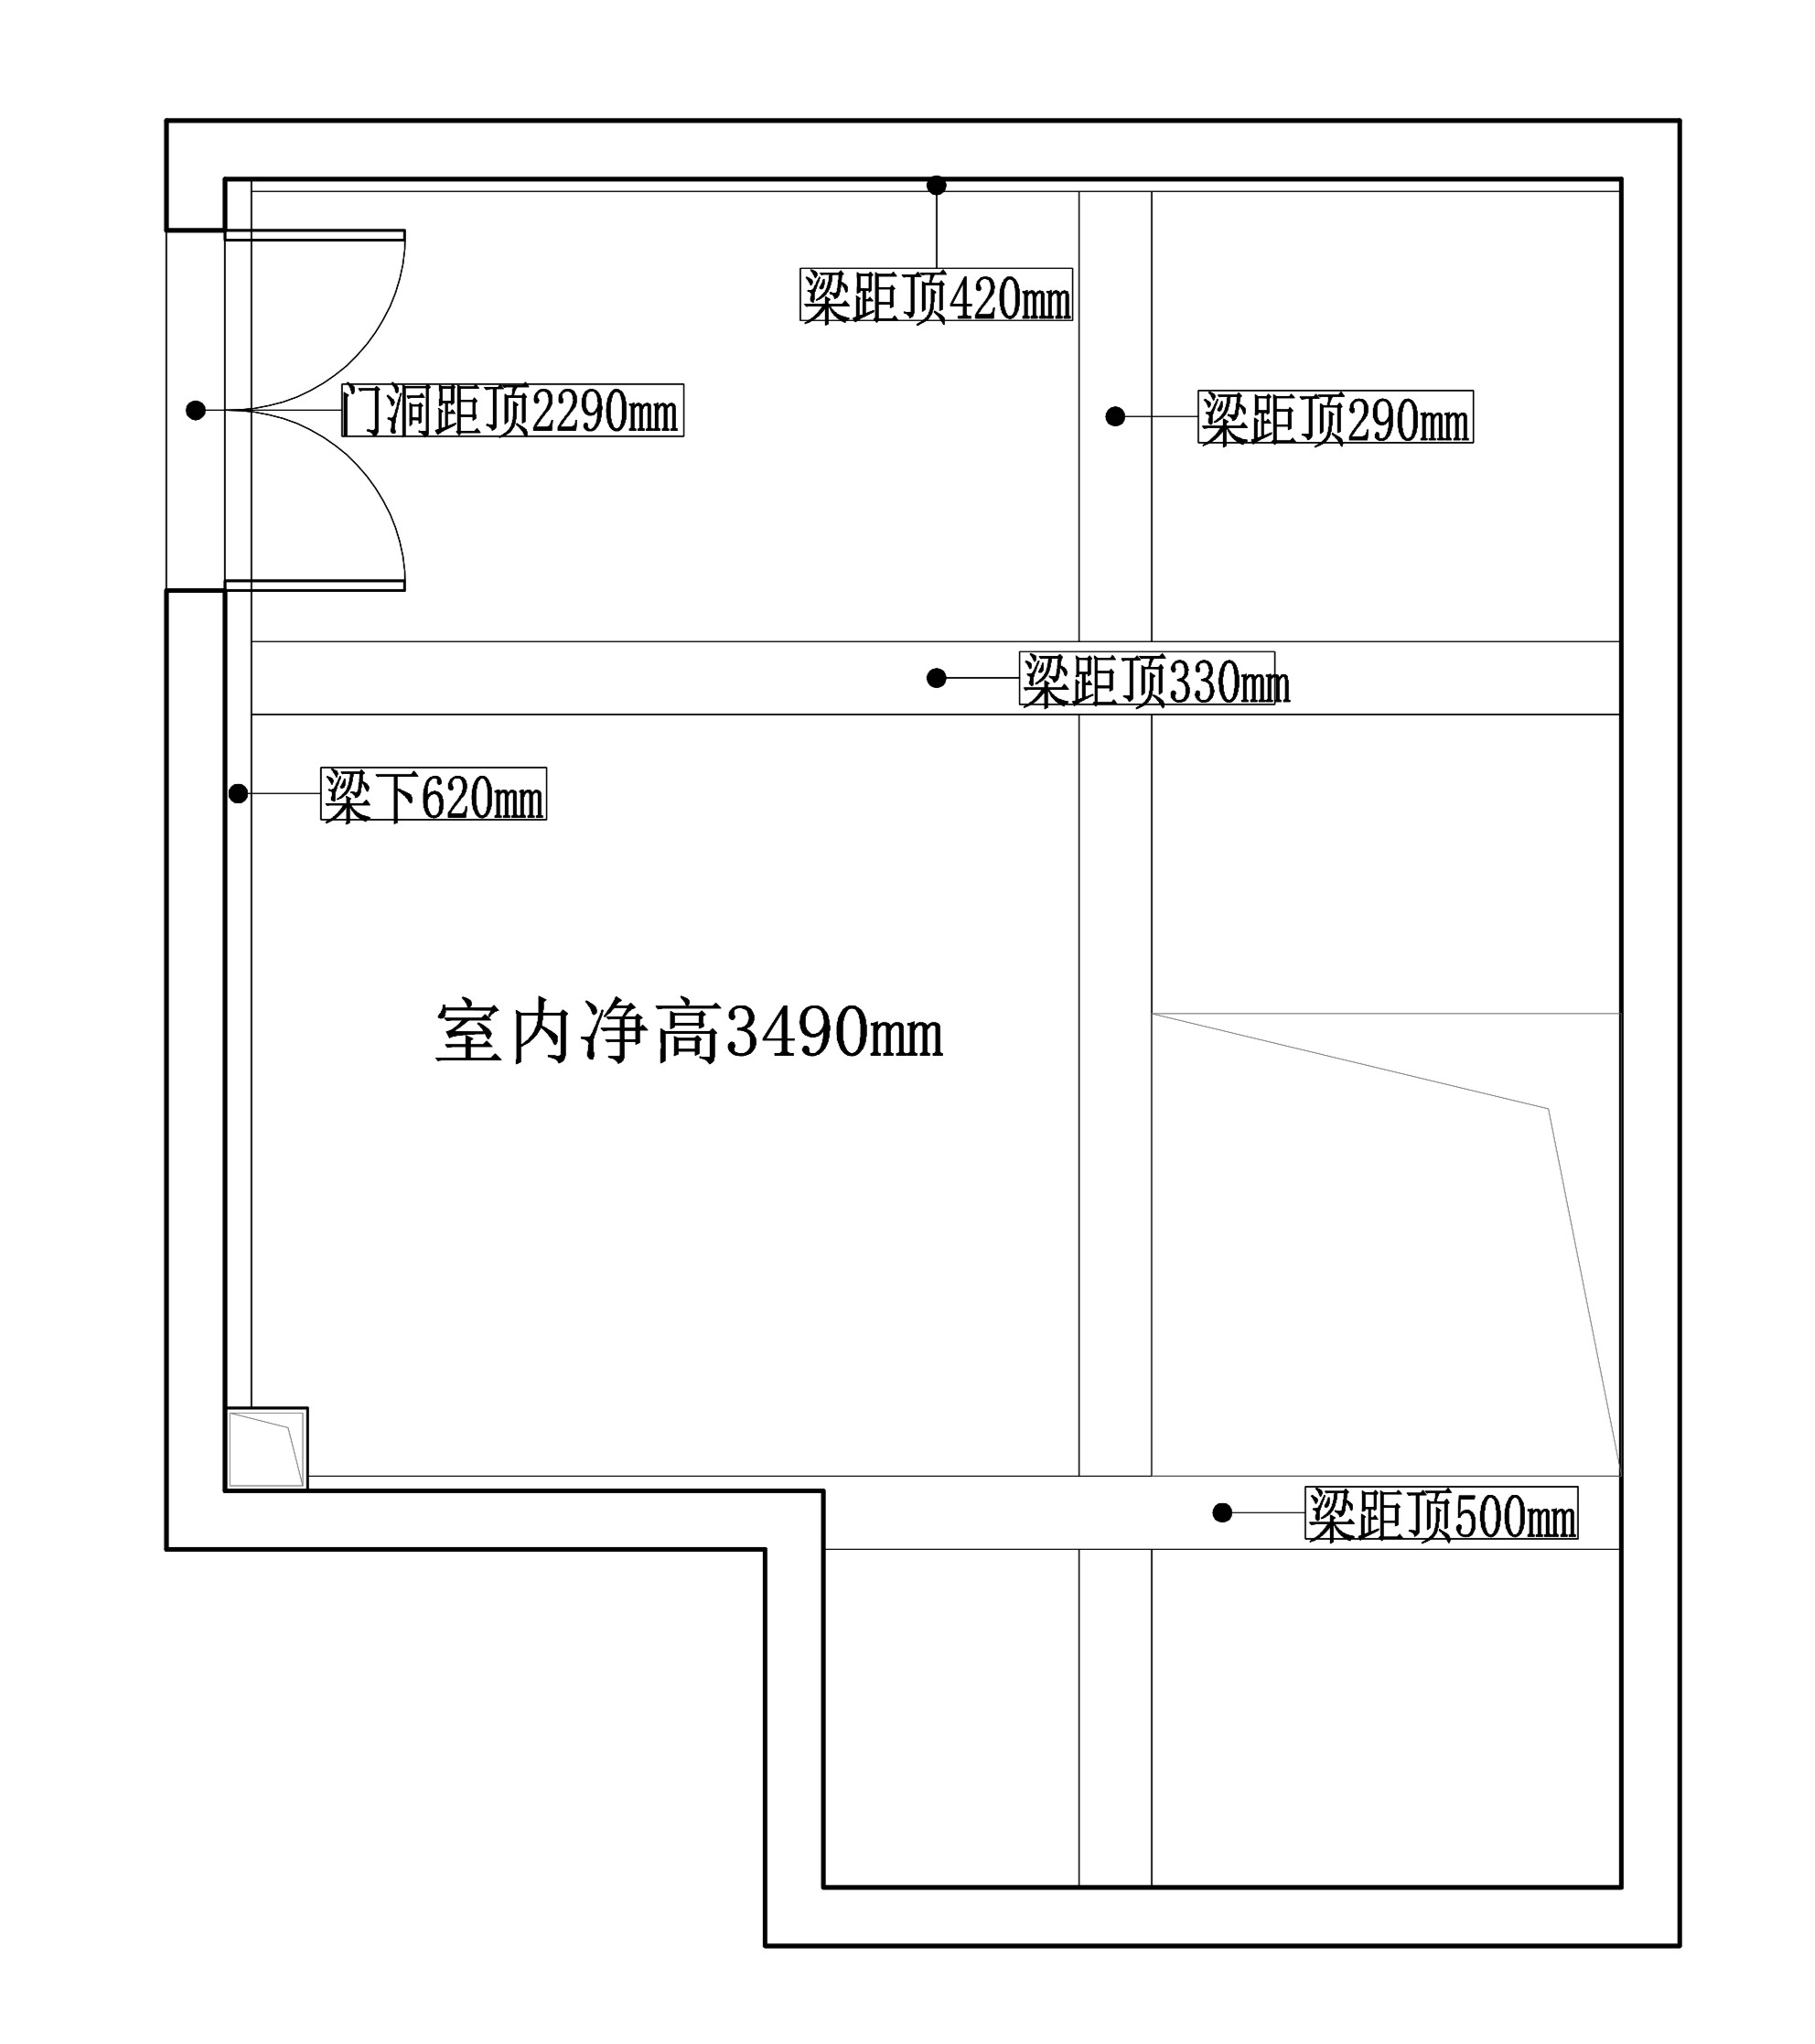 248平三居室户型图